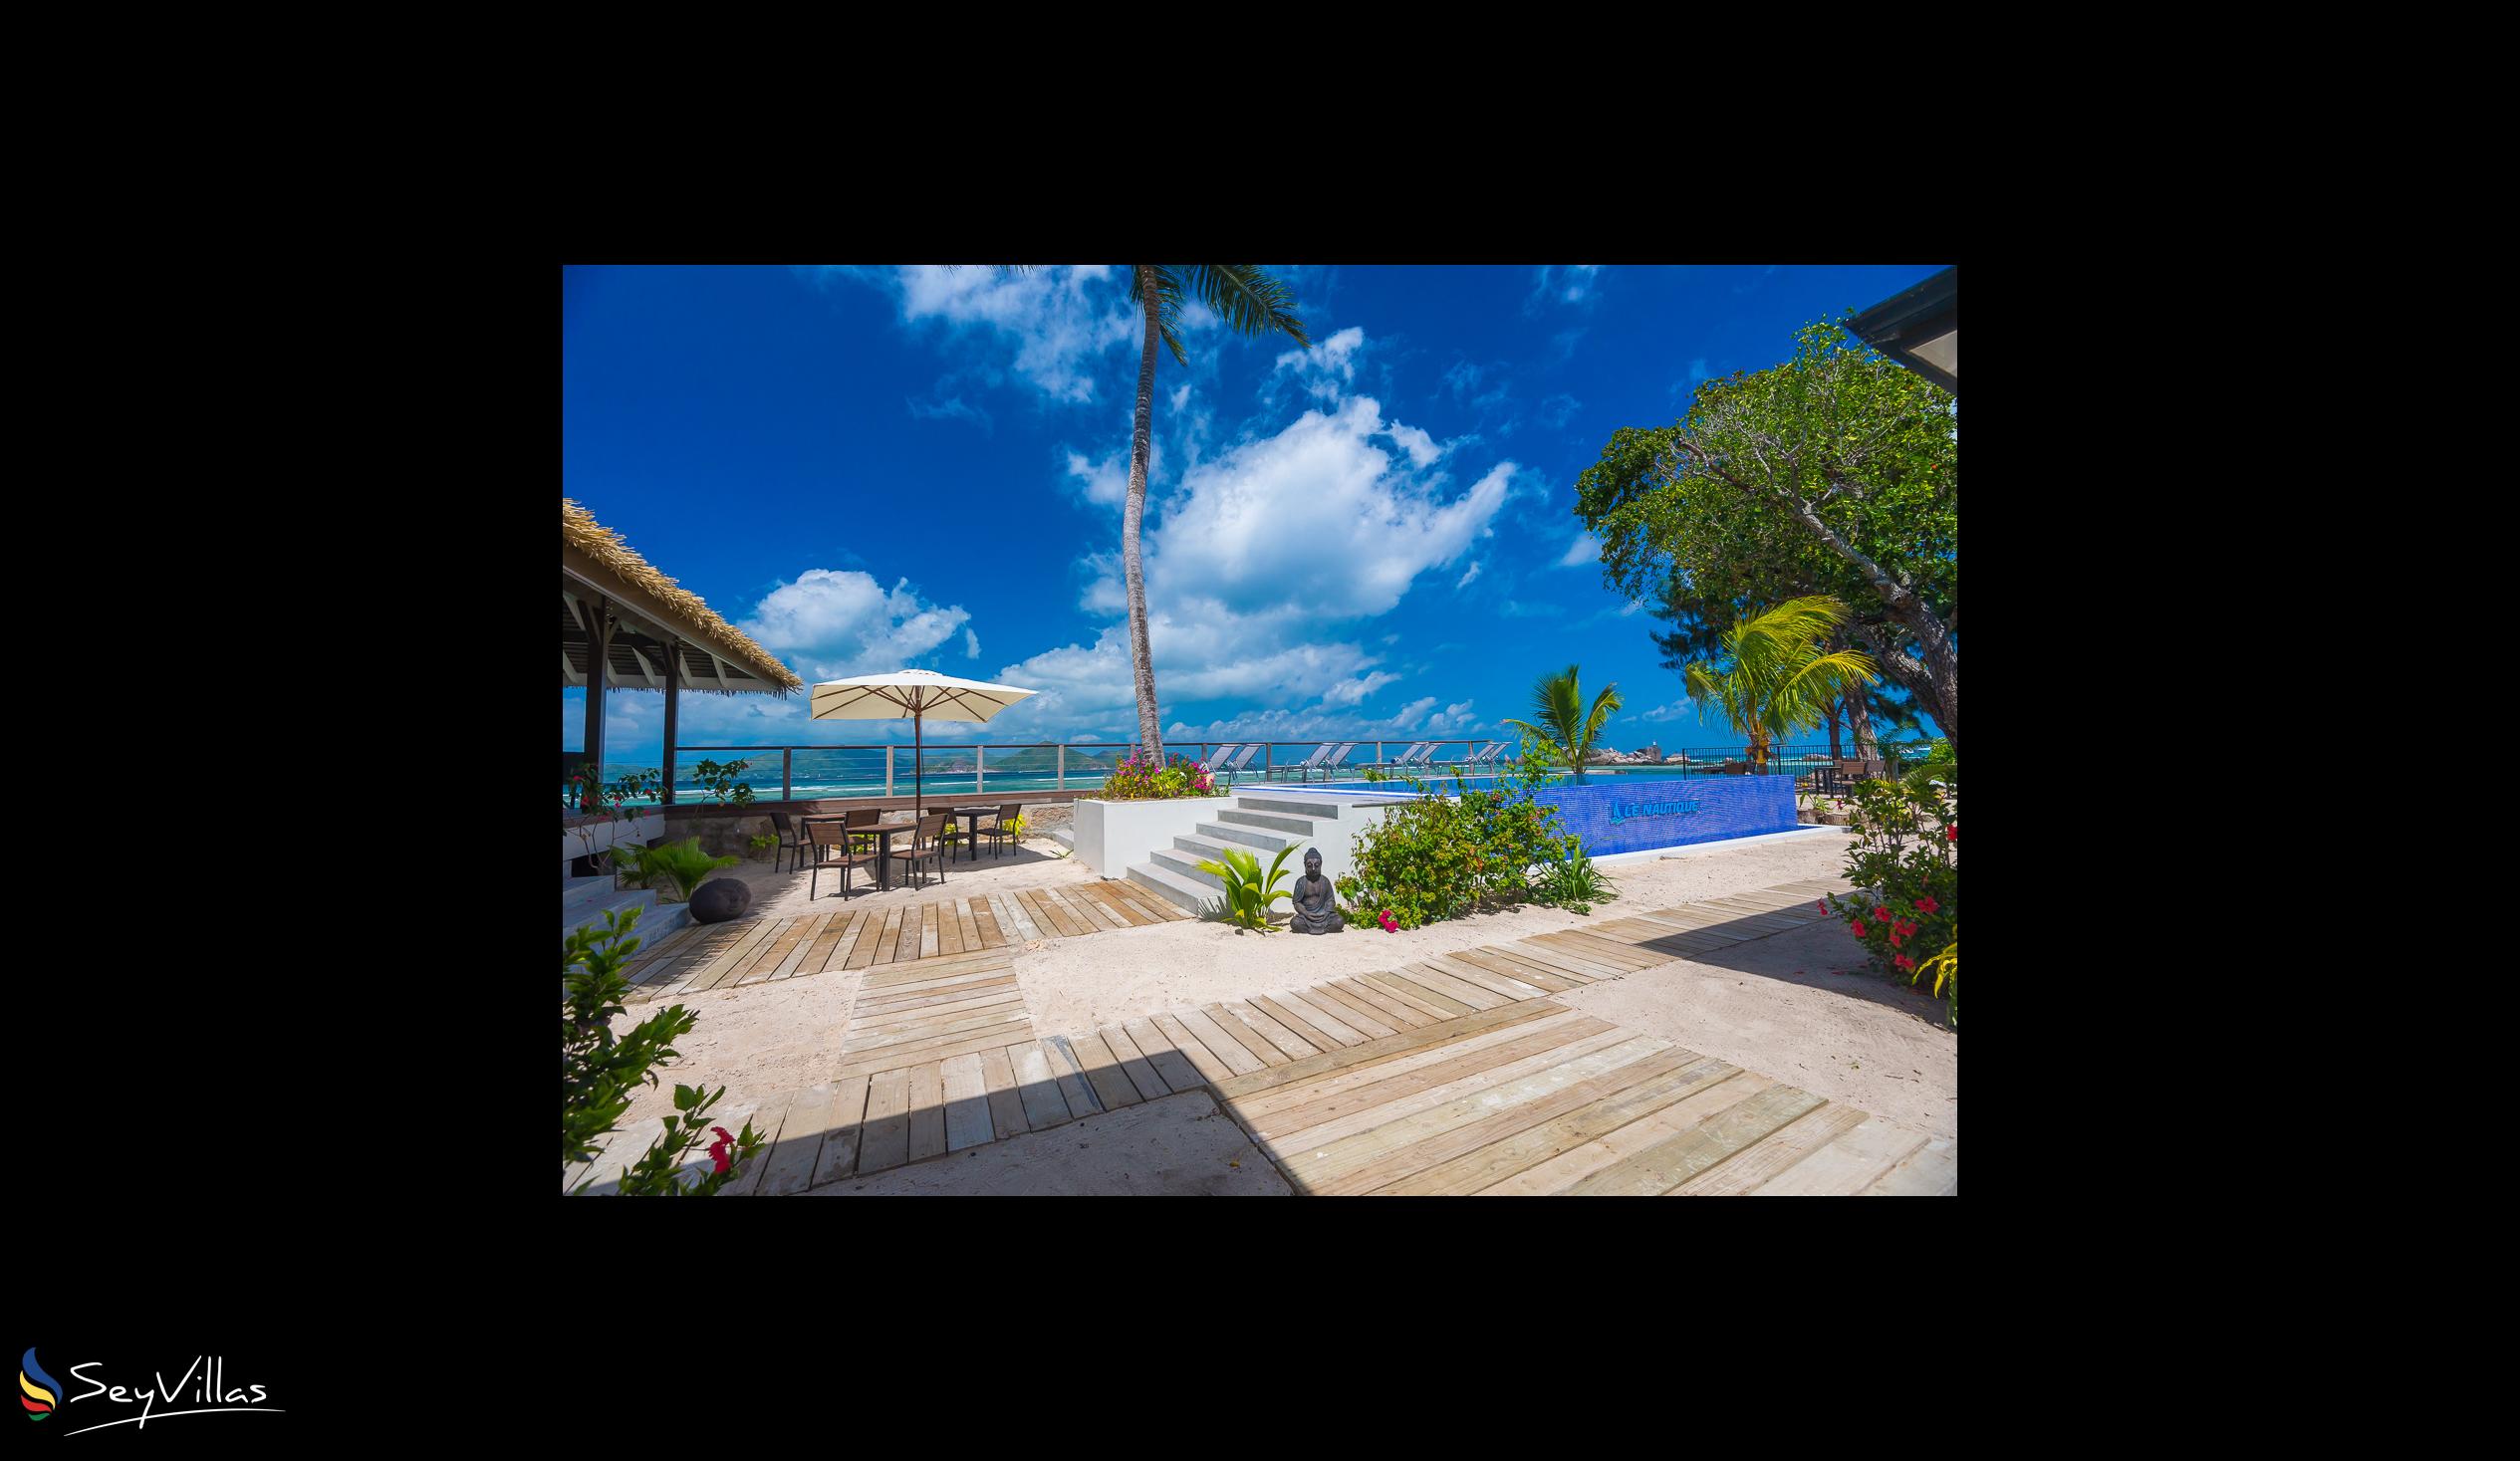 Foto 6: Le Nautique Luxury Waterfront Hotel - Aussenbereich - La Digue (Seychellen)